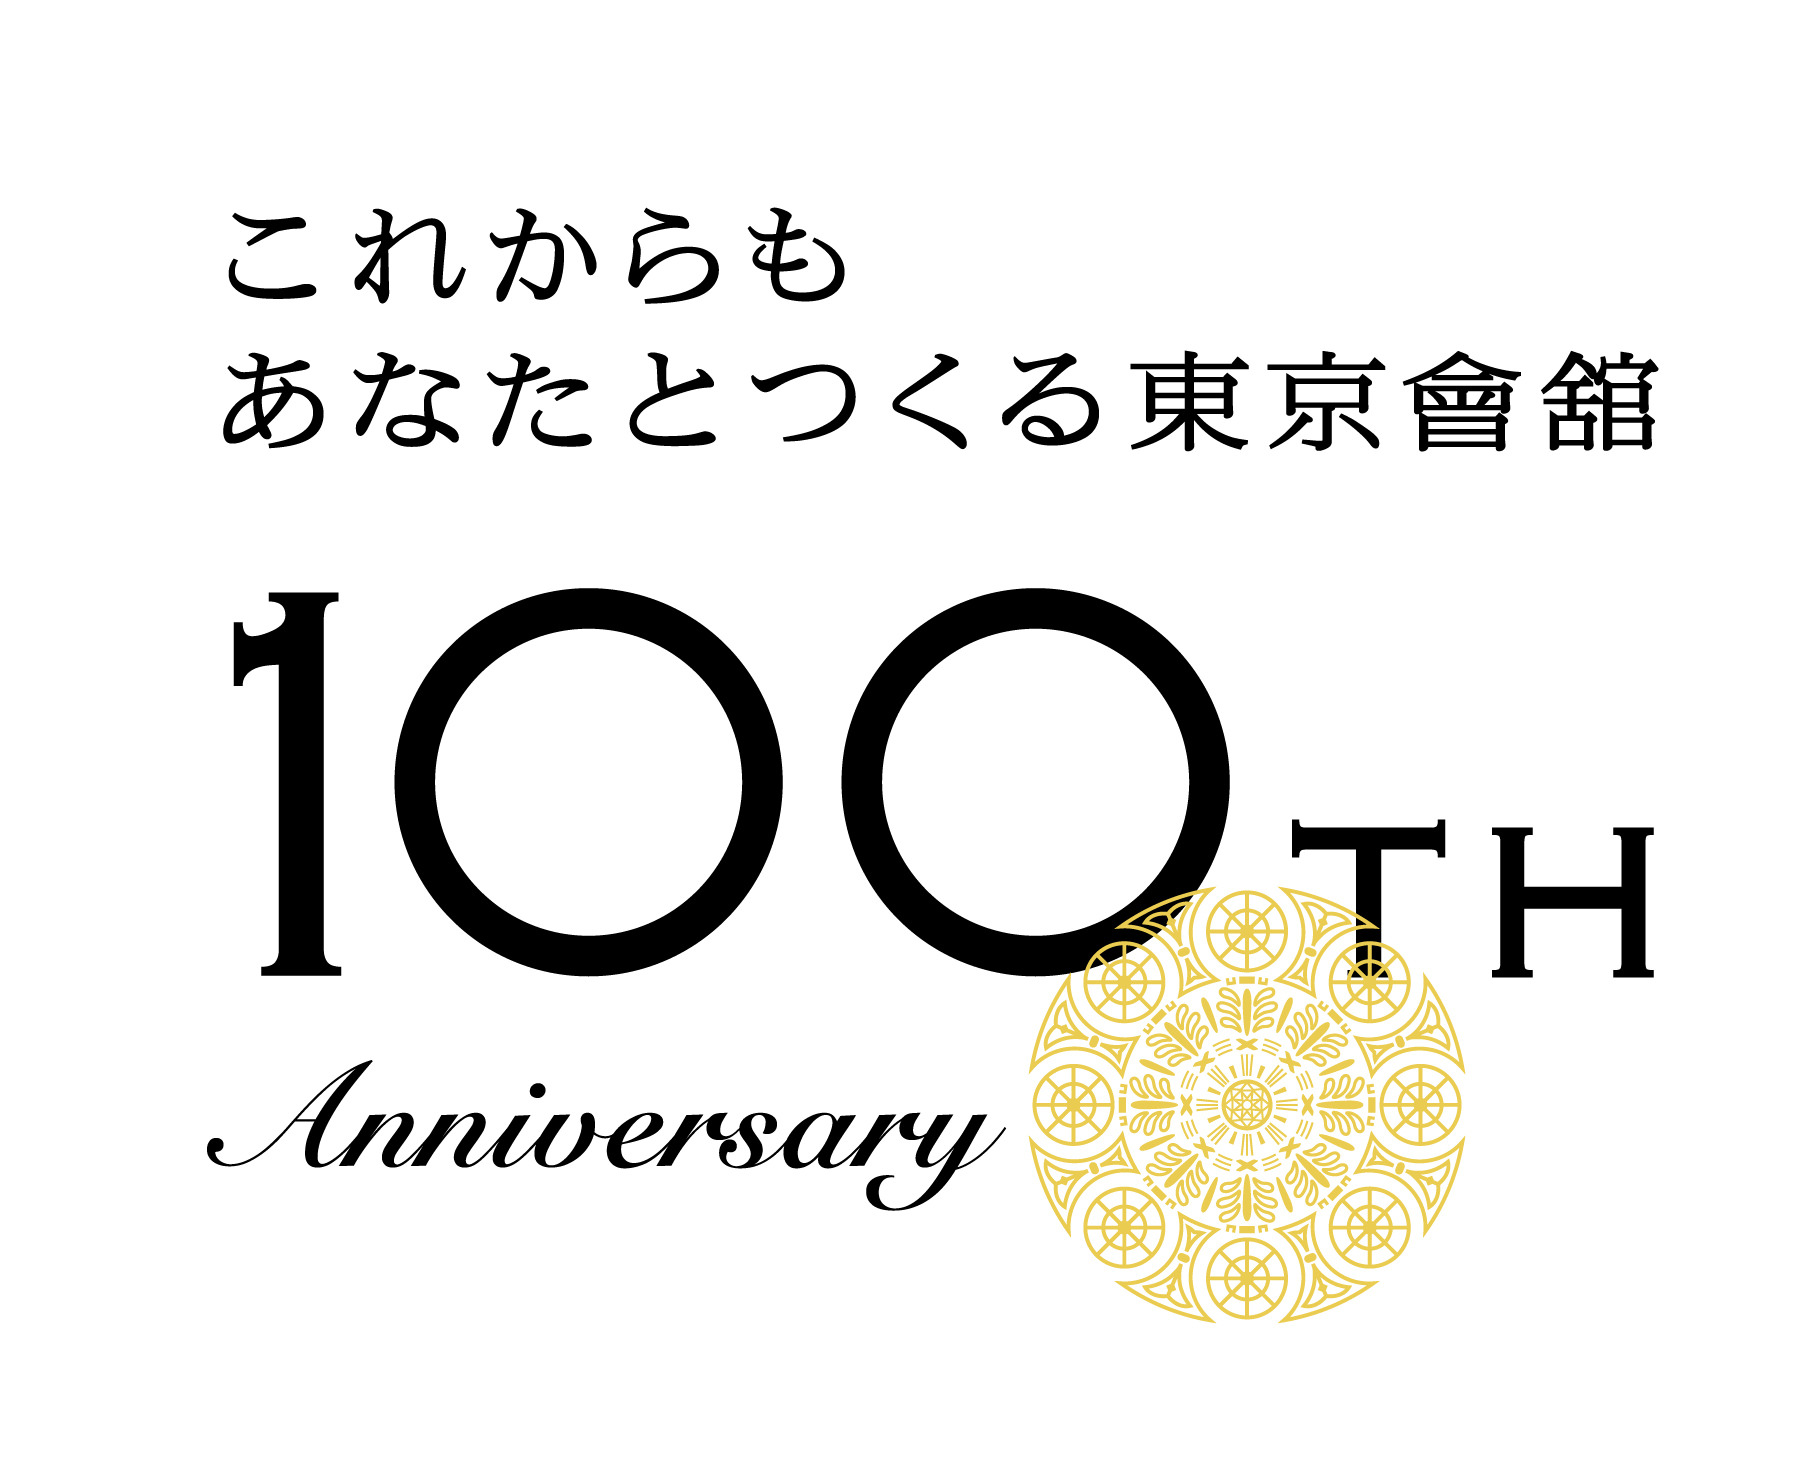 東京會舘は2022年11月1日で創業100周年！
いよいよ周年記念企画がスタート　
東京會舘　100周年記念商品・記念イベント第1弾 ご紹介